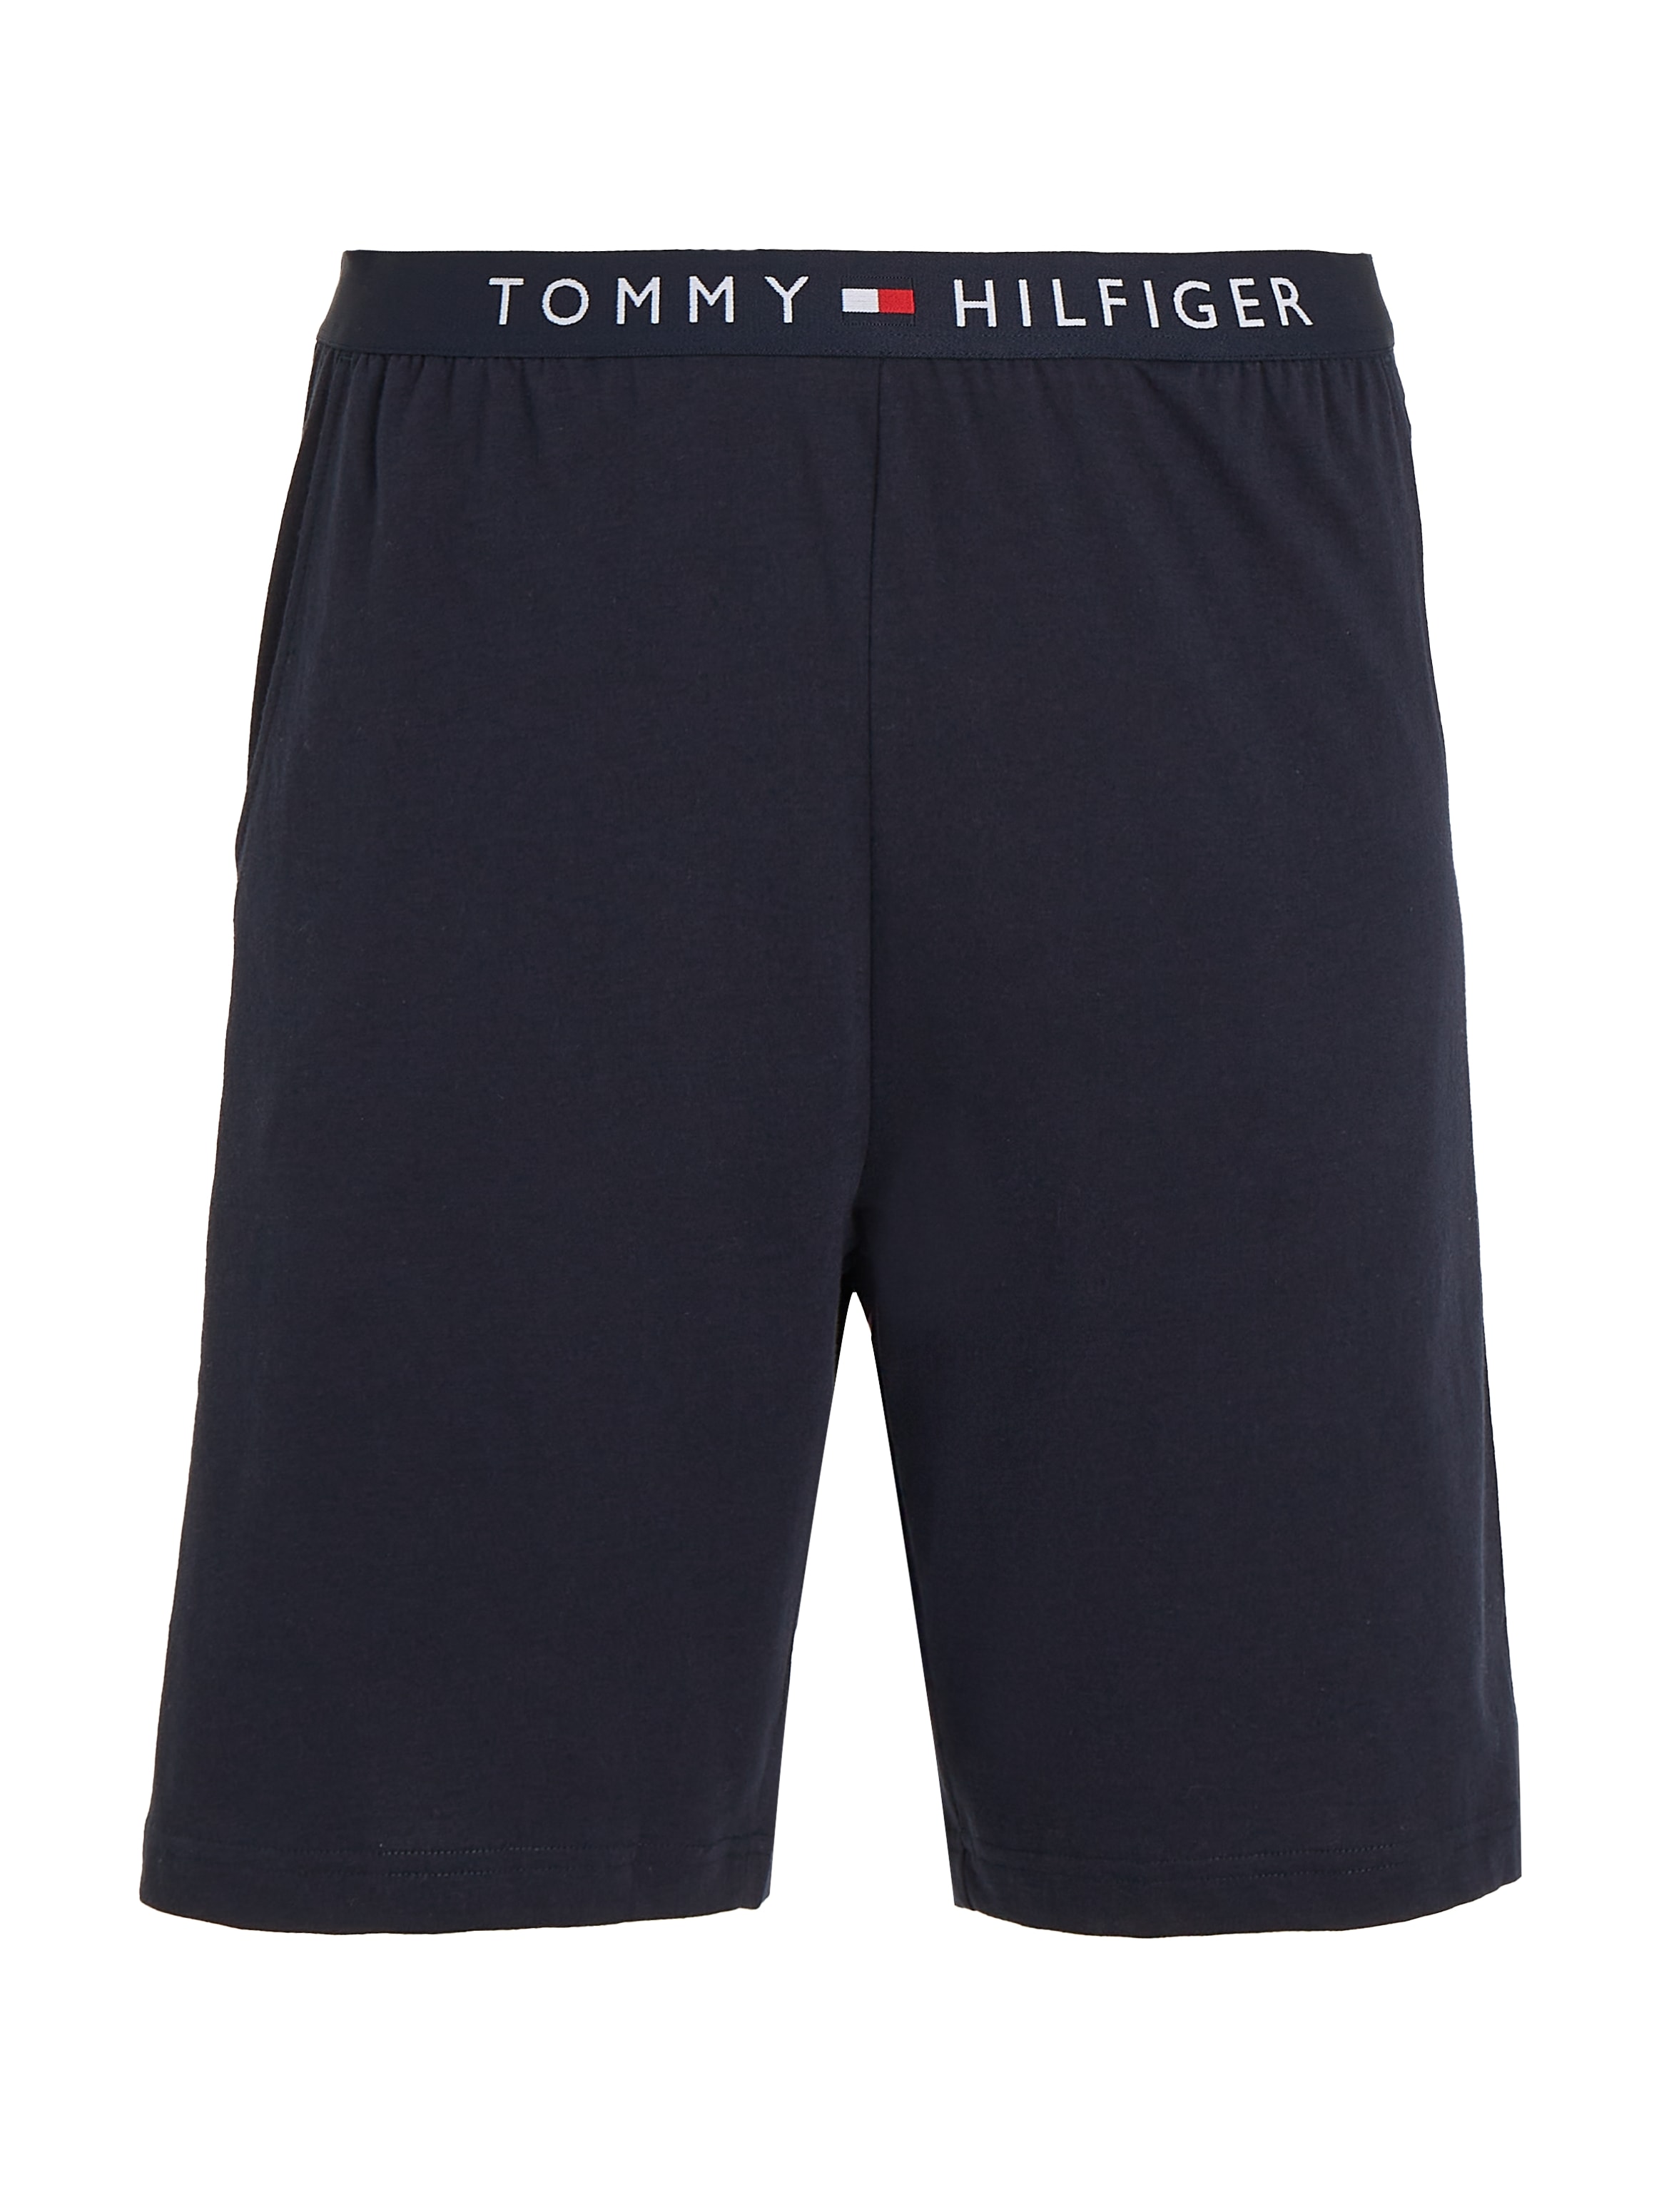 Tommy Hilfiger Underwear Schlafshorts »JERSEY SHORT«, mit Tommy Hilfiger Logoschriftzug am Bund